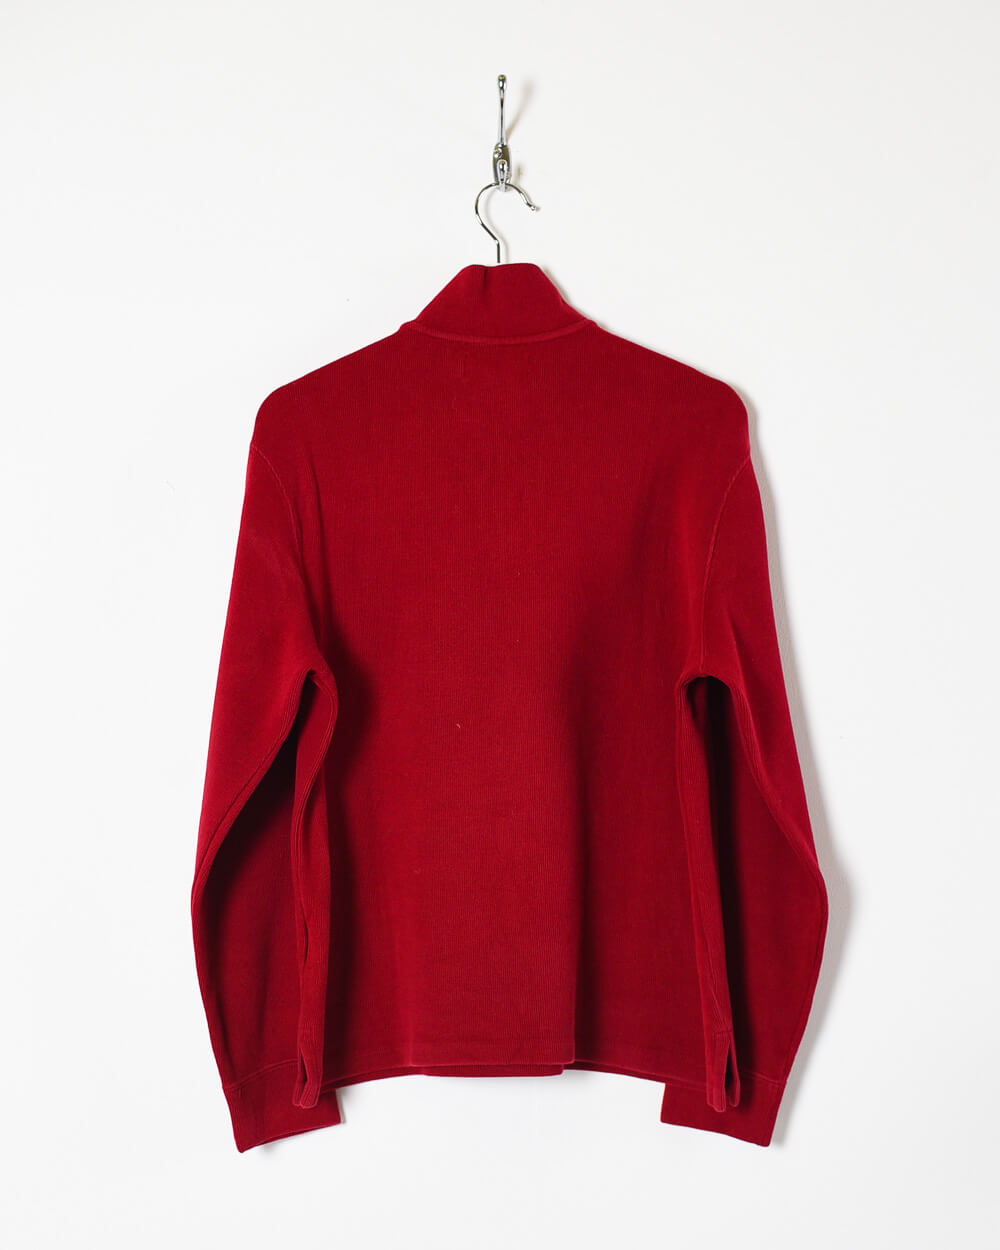 Maroon Ralph Lauren 1/4 Zip Sweatshirt - Small